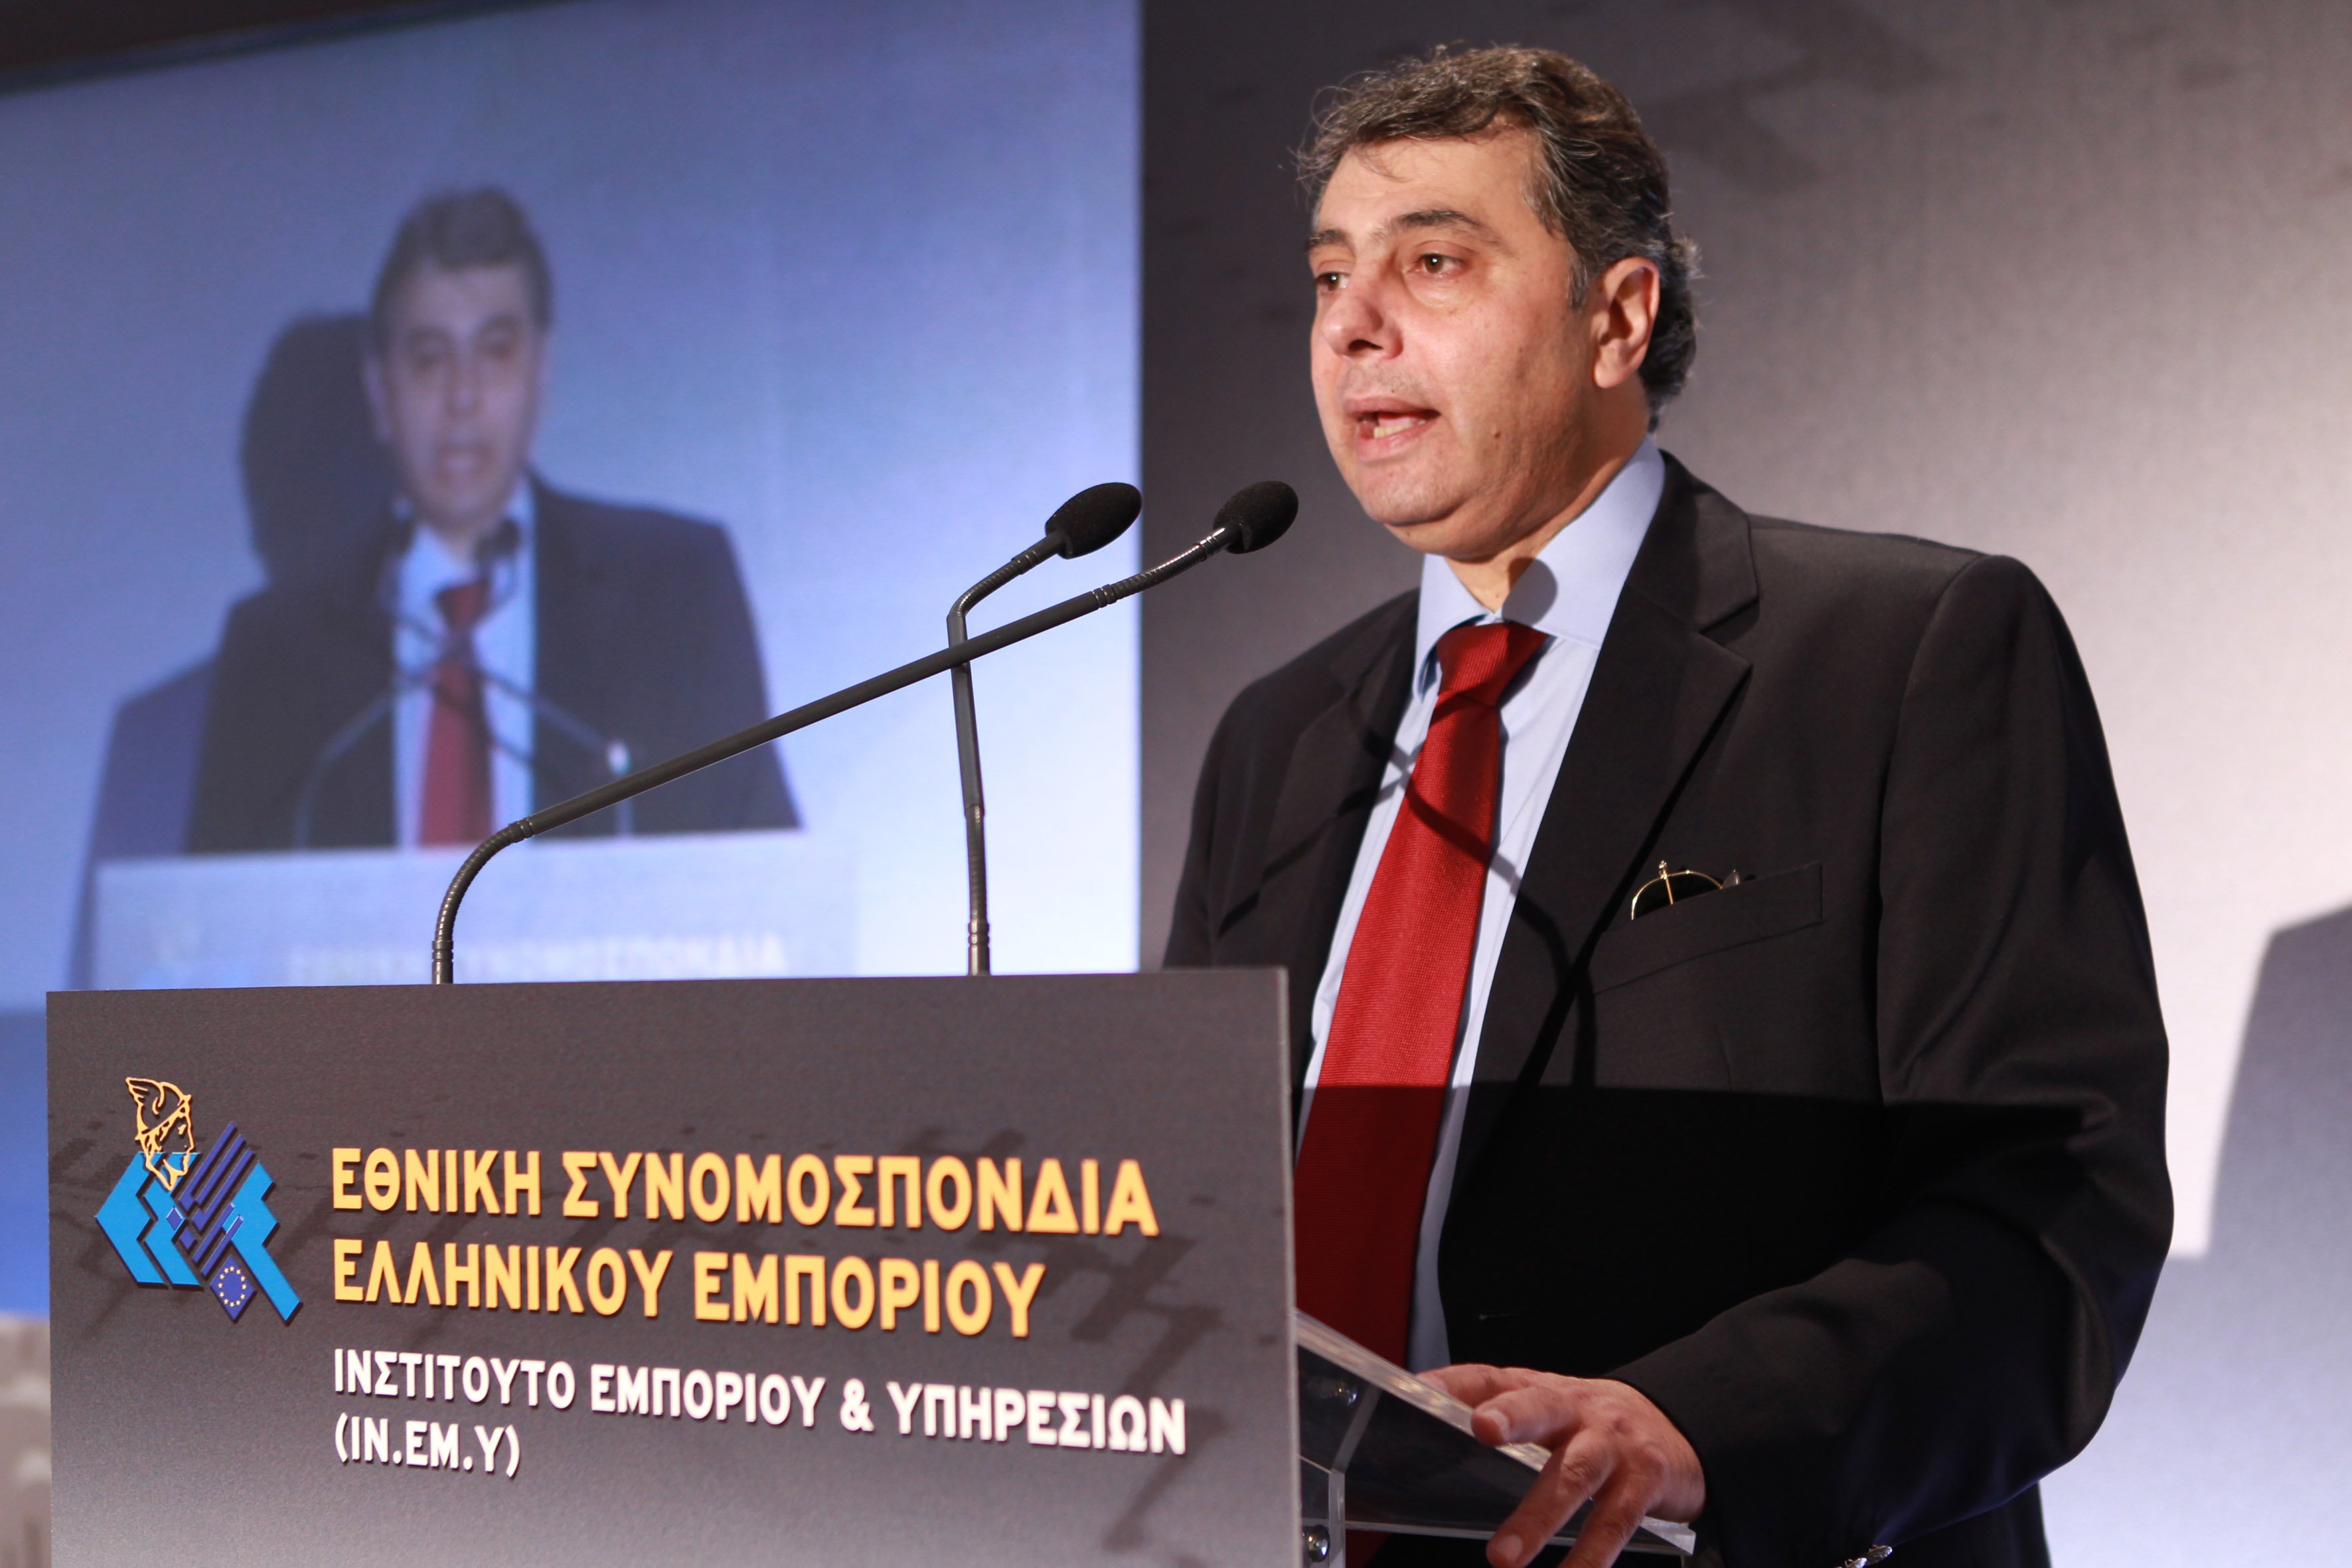 ΕΒΕΠ : Β. Κορκίδης: Σε δεύτερη μοίρα η μείωση της φορολογίας των επιχειρήσεων